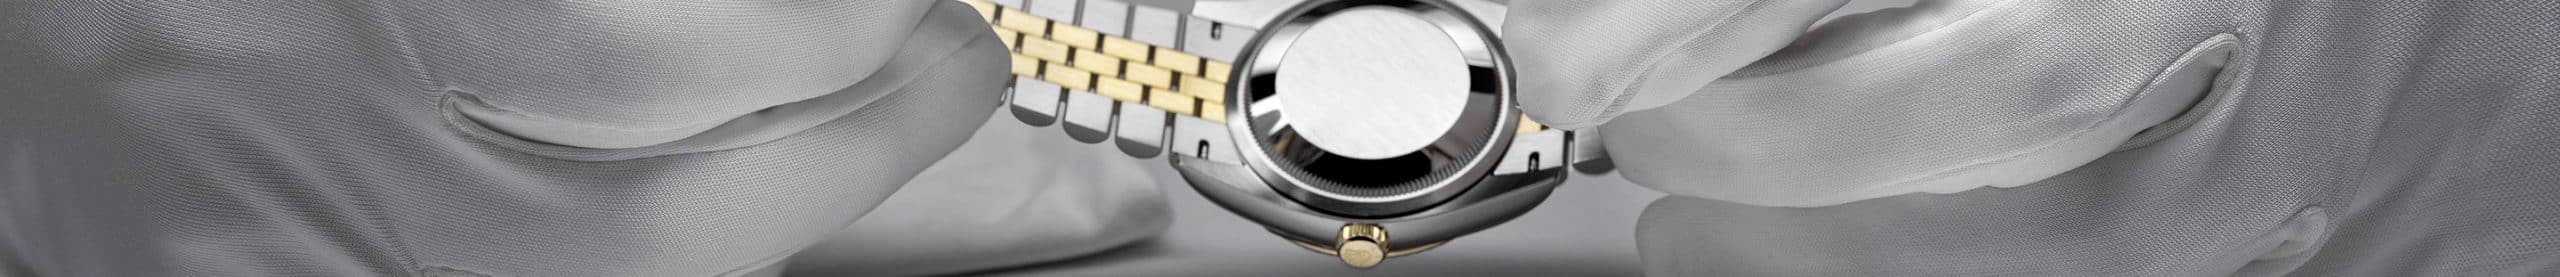 Rolex watch being serviced